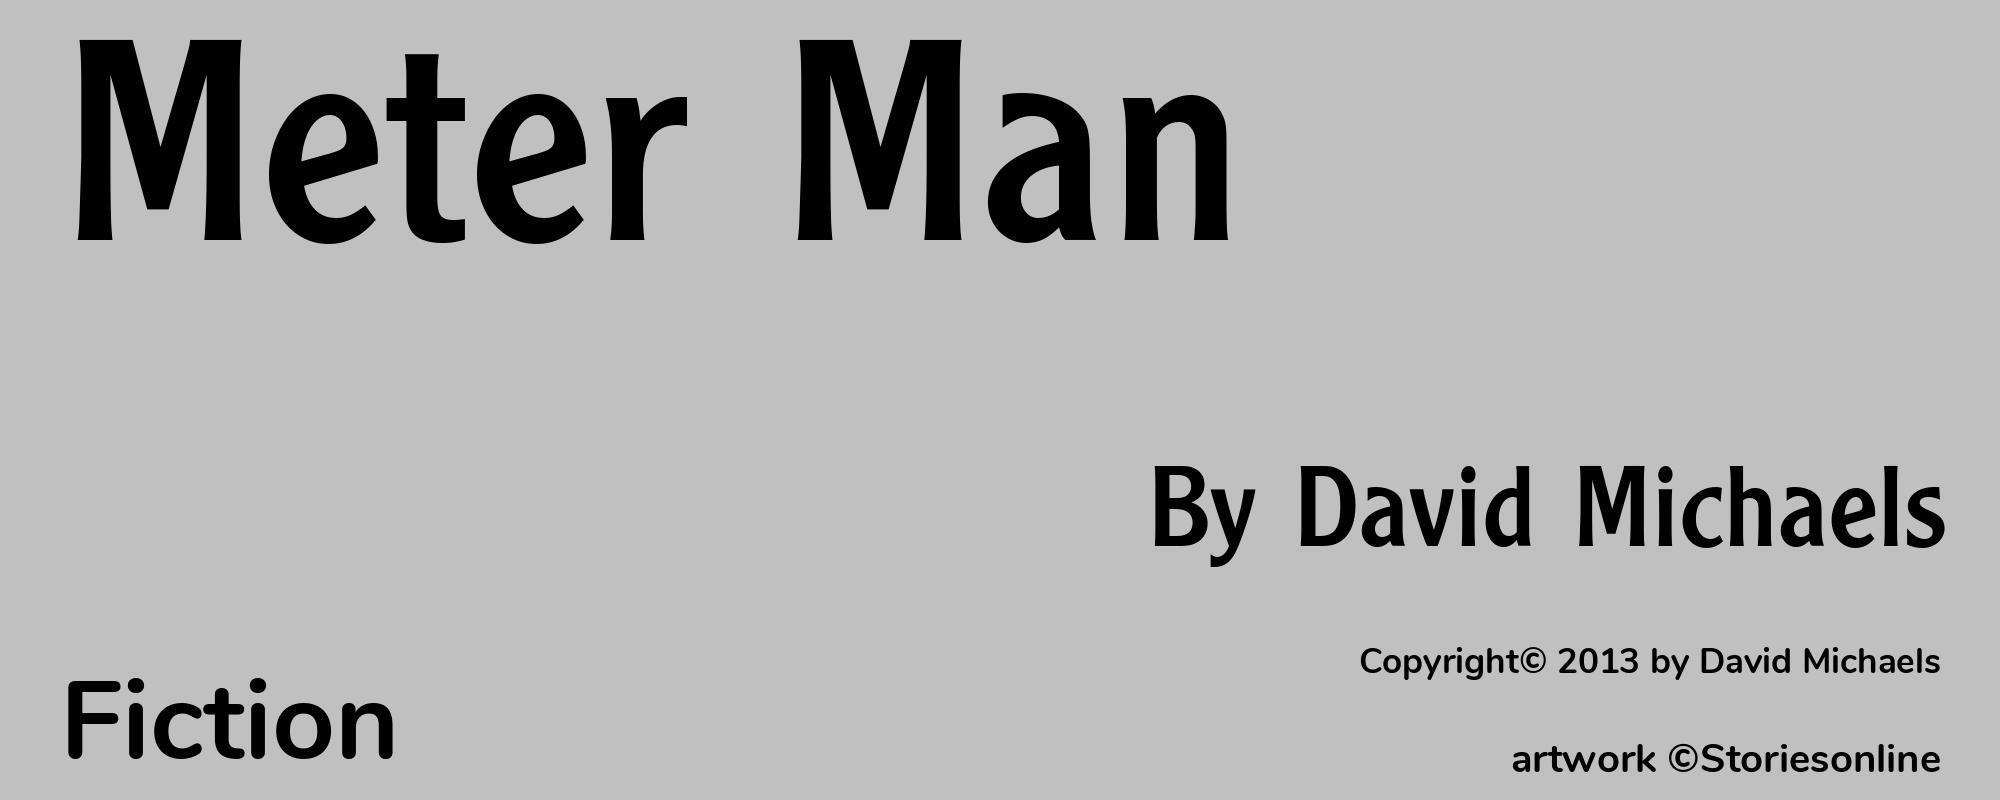 Meter Man - Cover